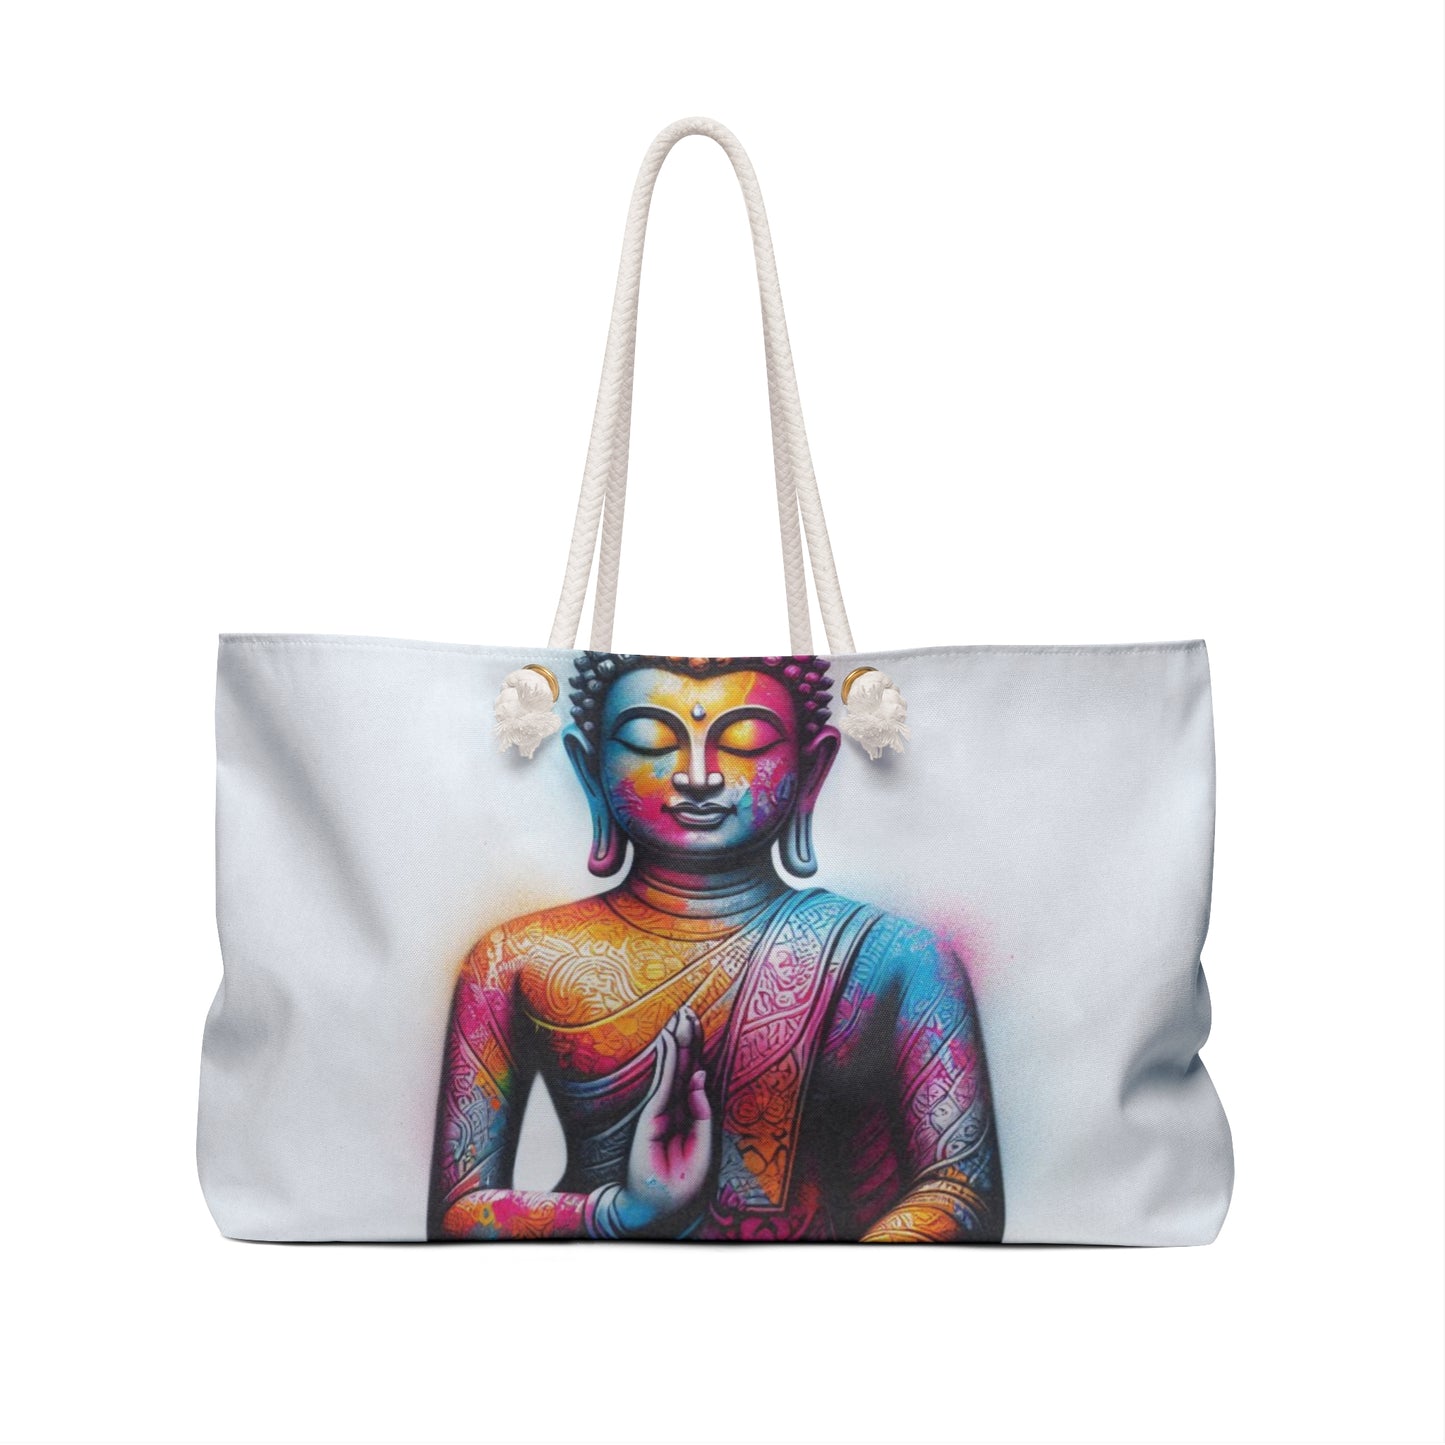 Colorful Buddha Travel Bag: Oversized Bag, Overnight Bag, Gym Bag